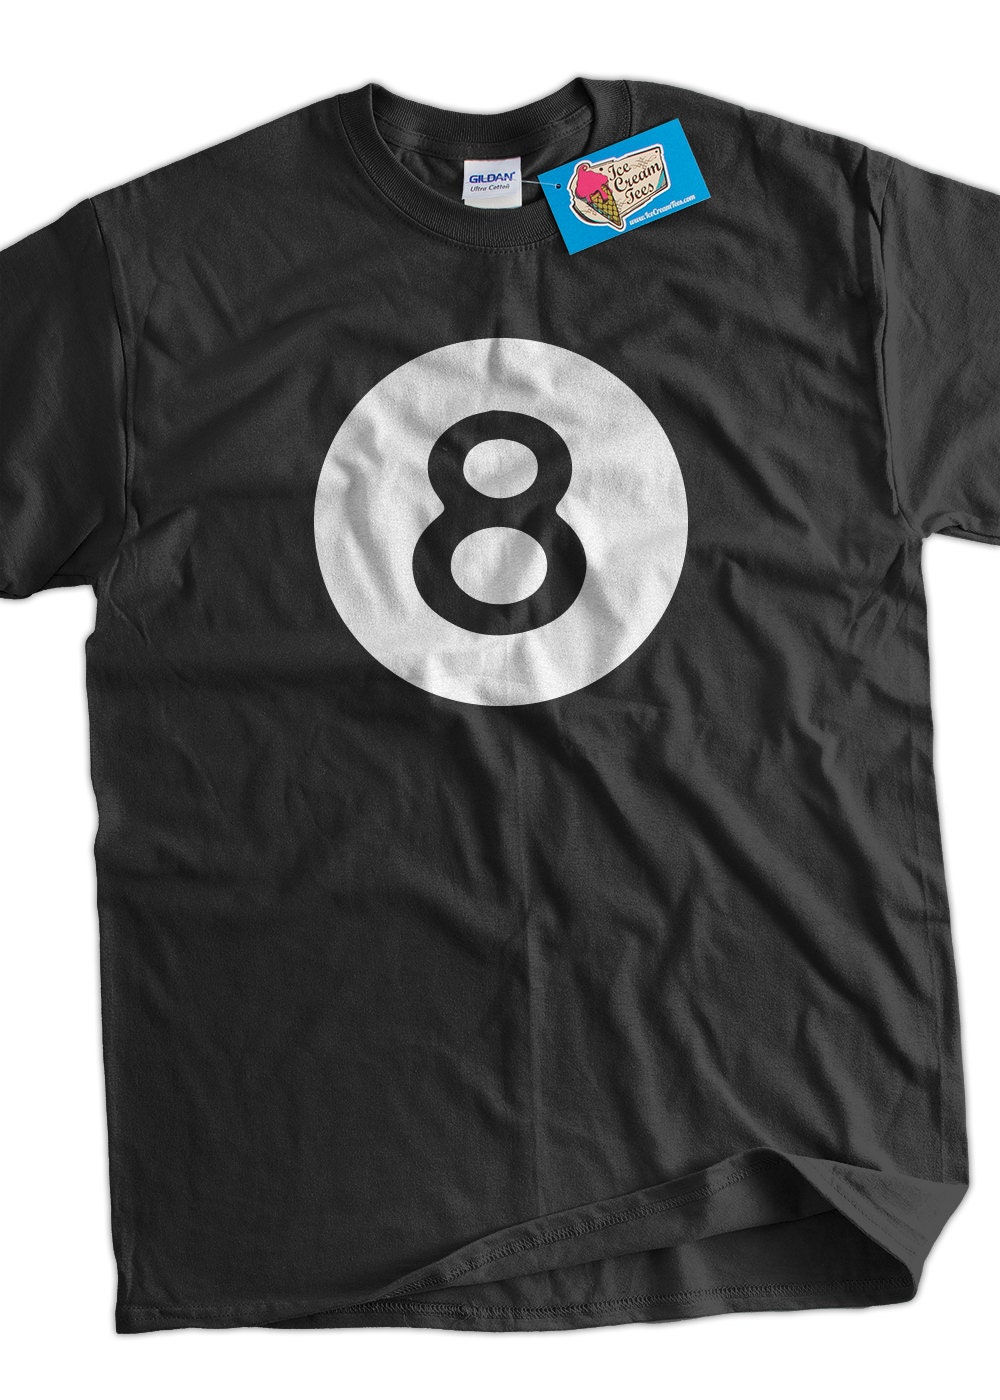 Eight Ball Billardkugel Damen T Shirt Kugel 8ball Pool Logo Poolbillard Acht 